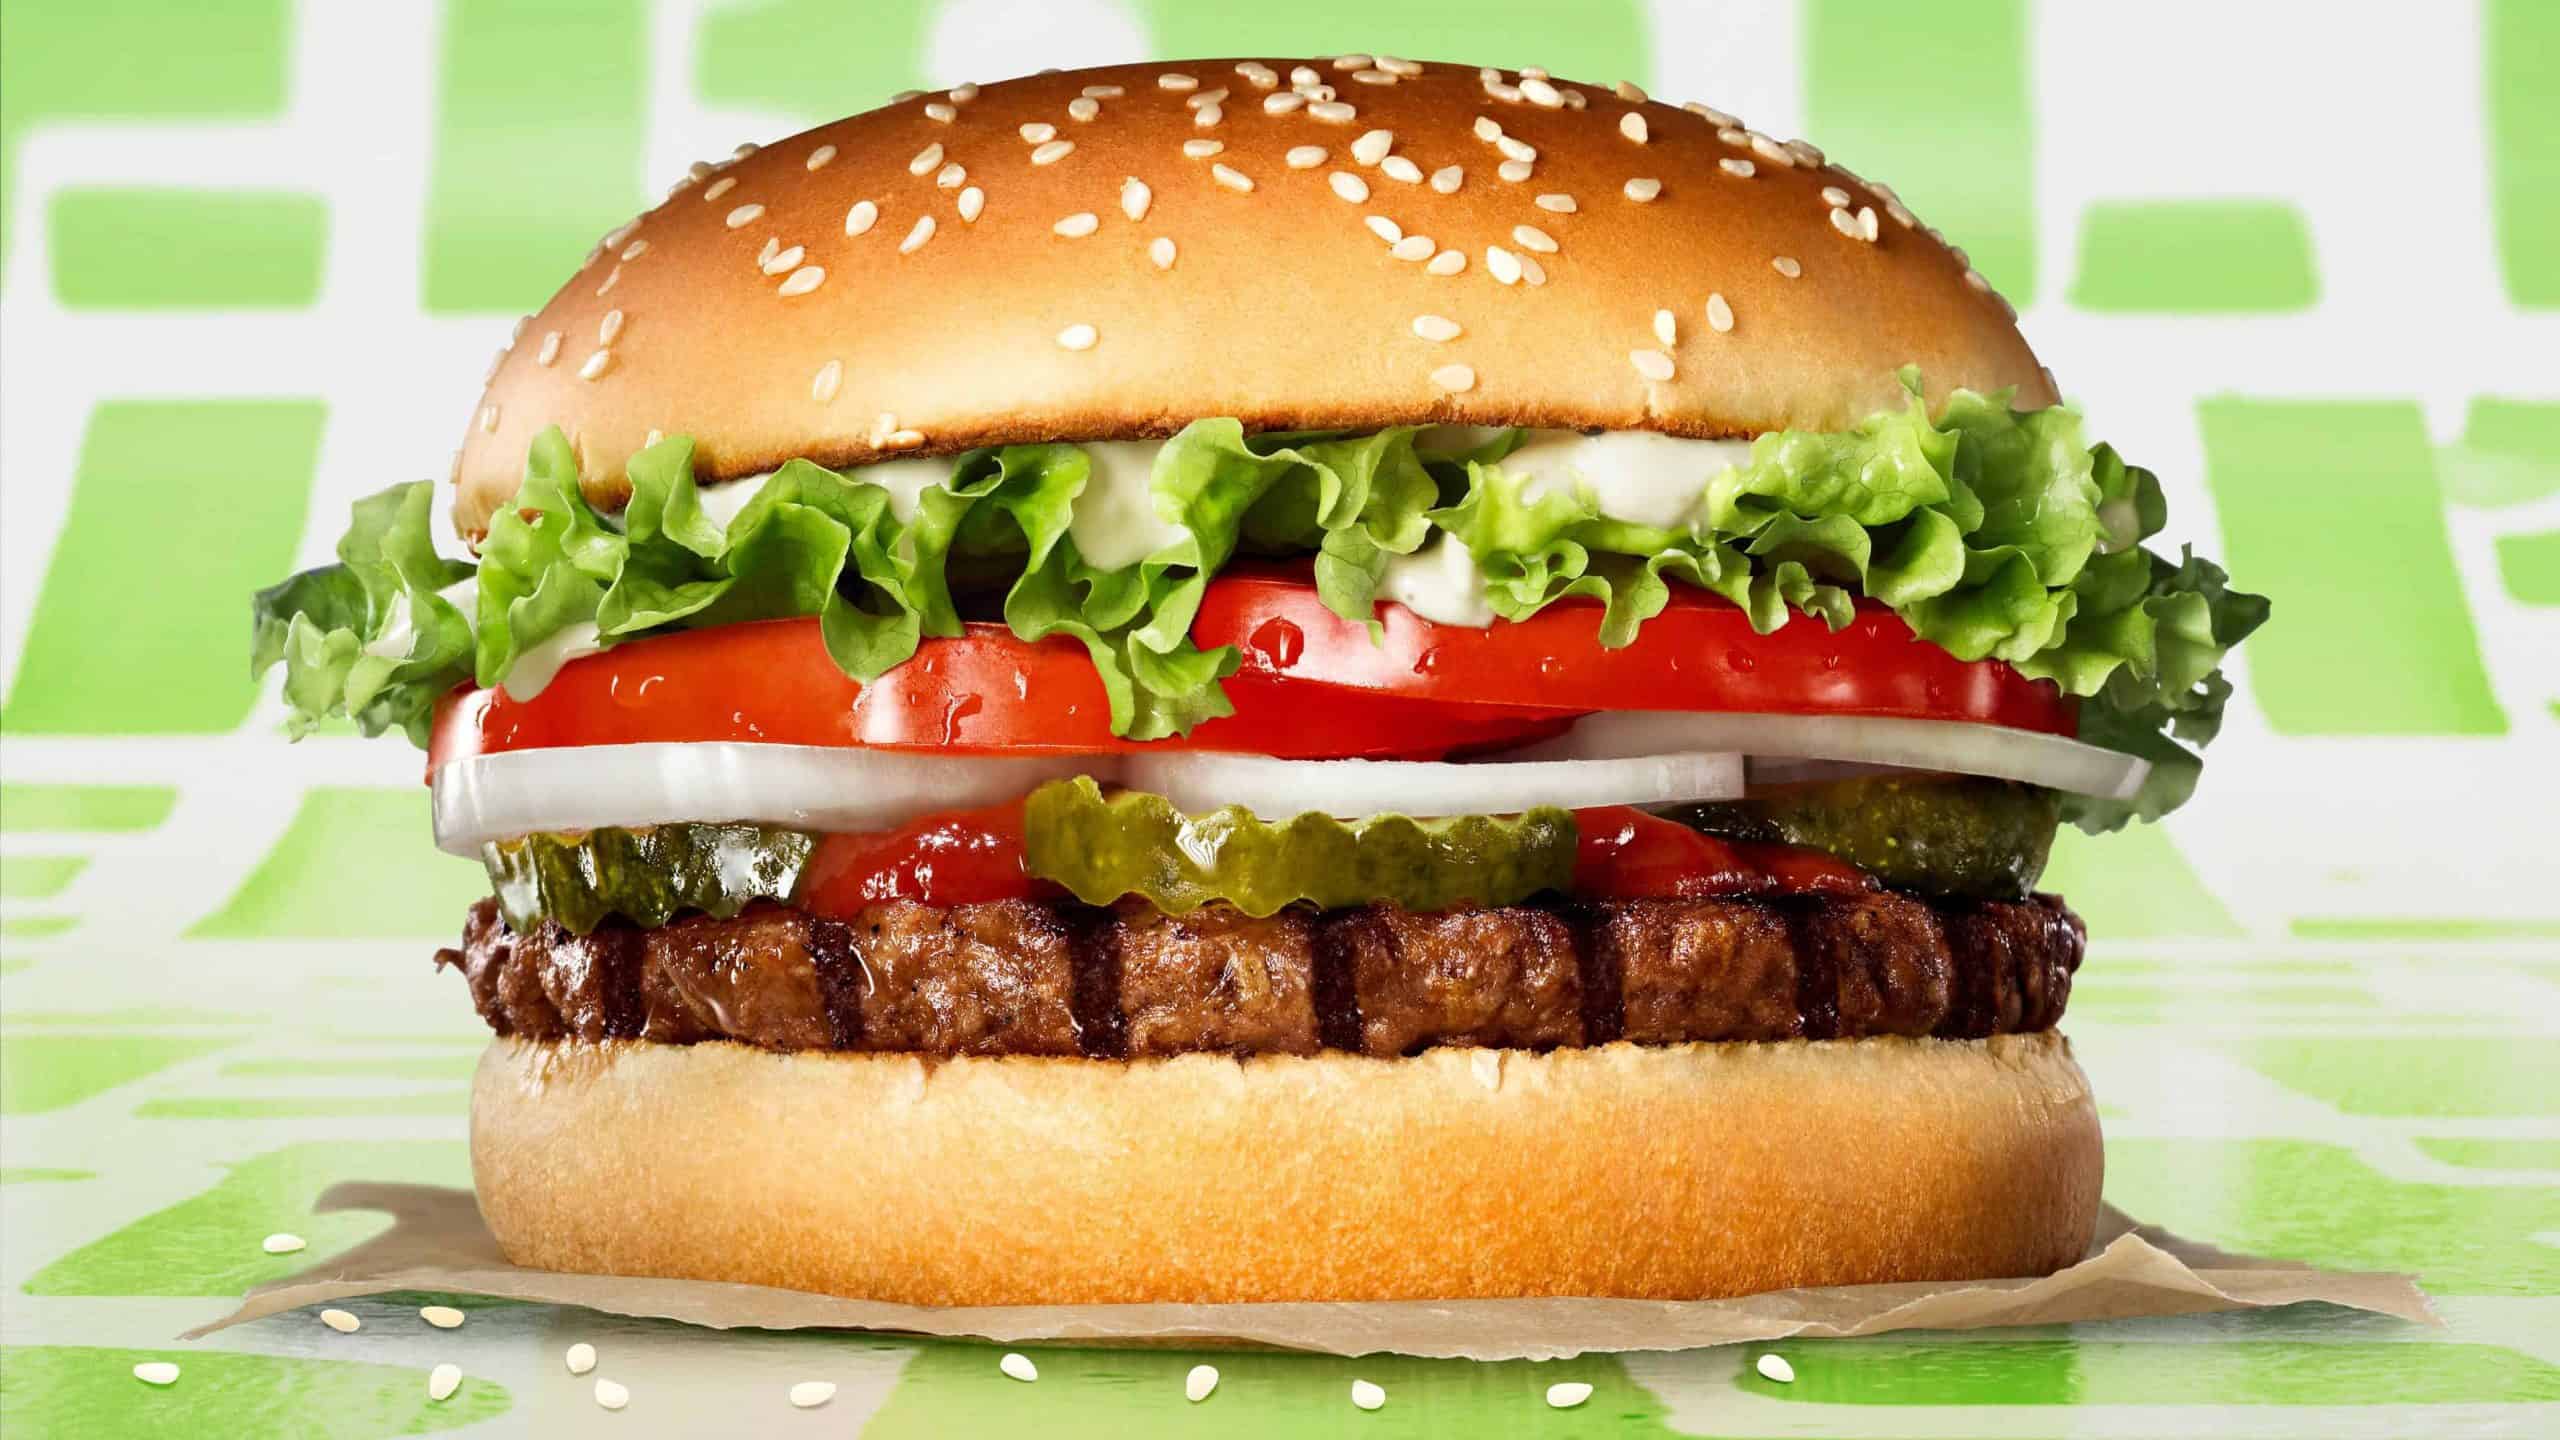 Plant-based Rebel Whopper arrives at UK Burger King restaurants